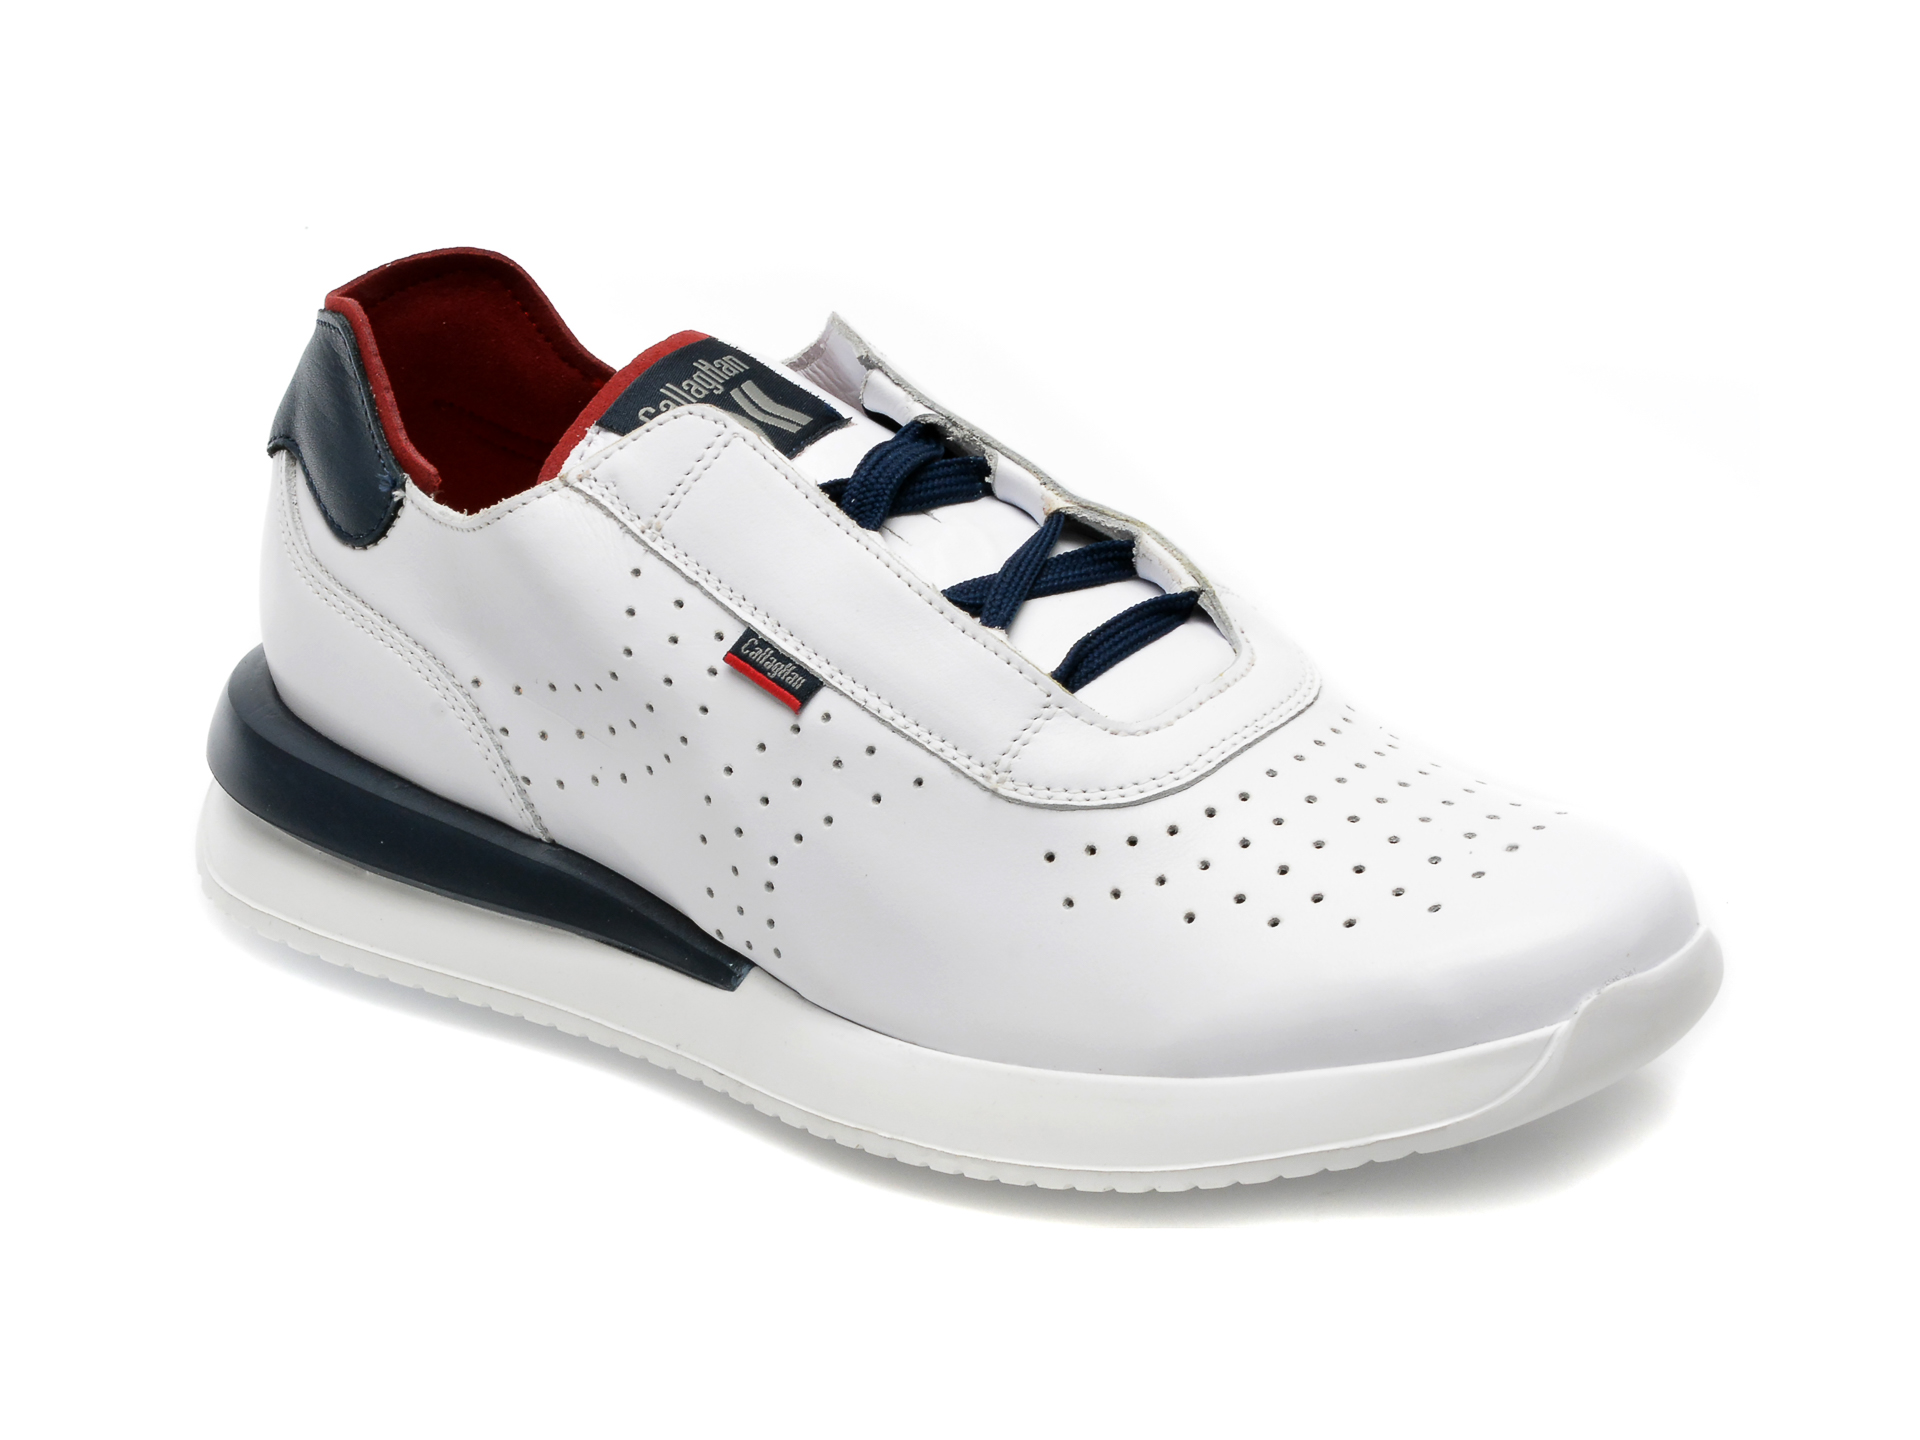 Pantofi CALLAGHAN albi, 51101, din piele naturala /barbati/pantofi